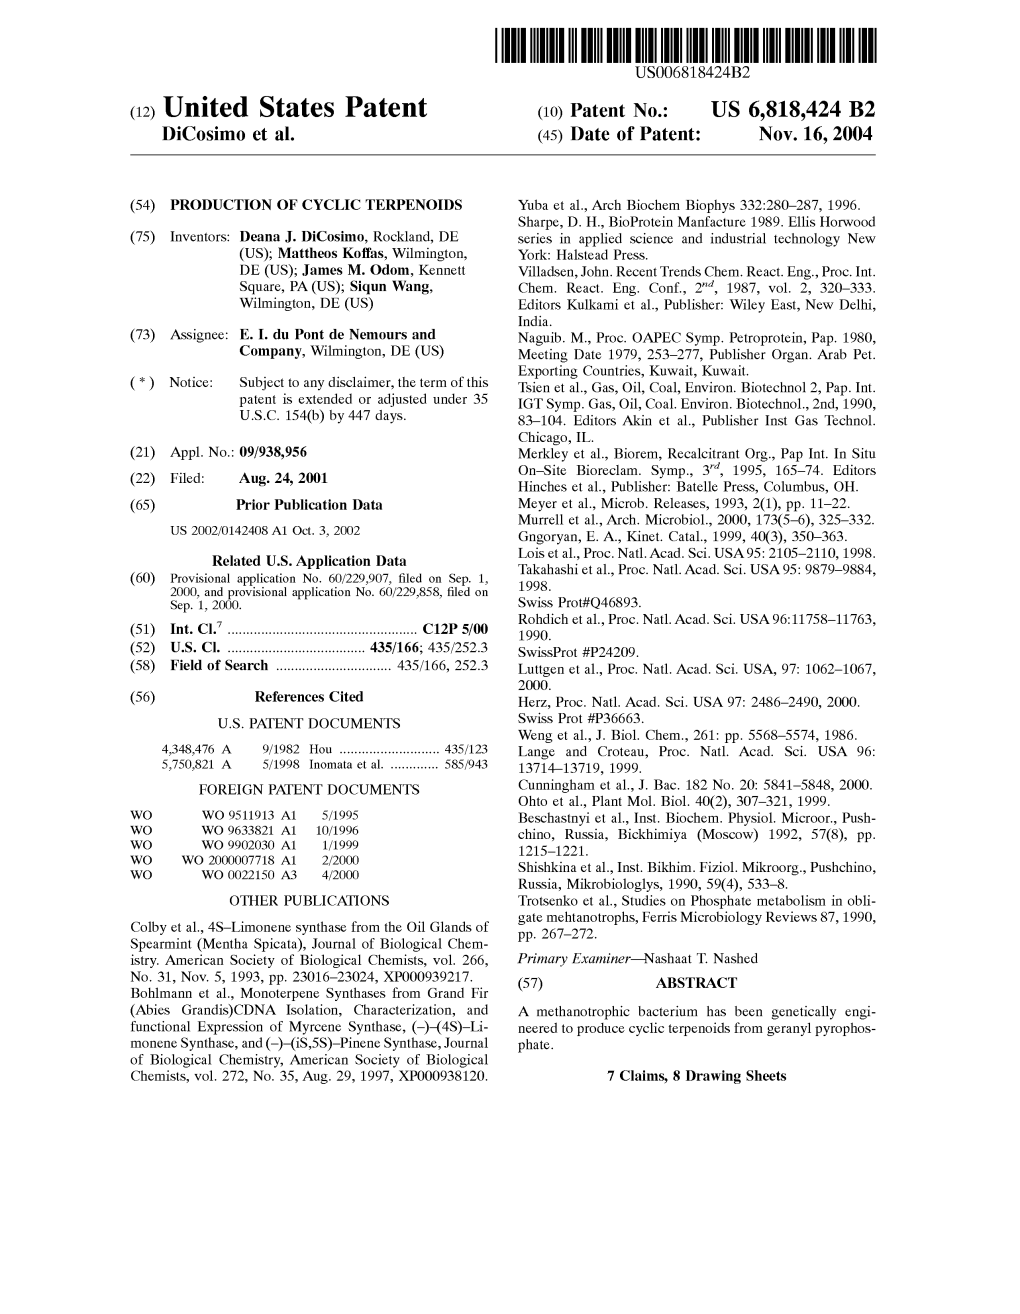 (12) United States Patent (10) Patent No.: US 6,818,424 B2 Dicosimo Et Al